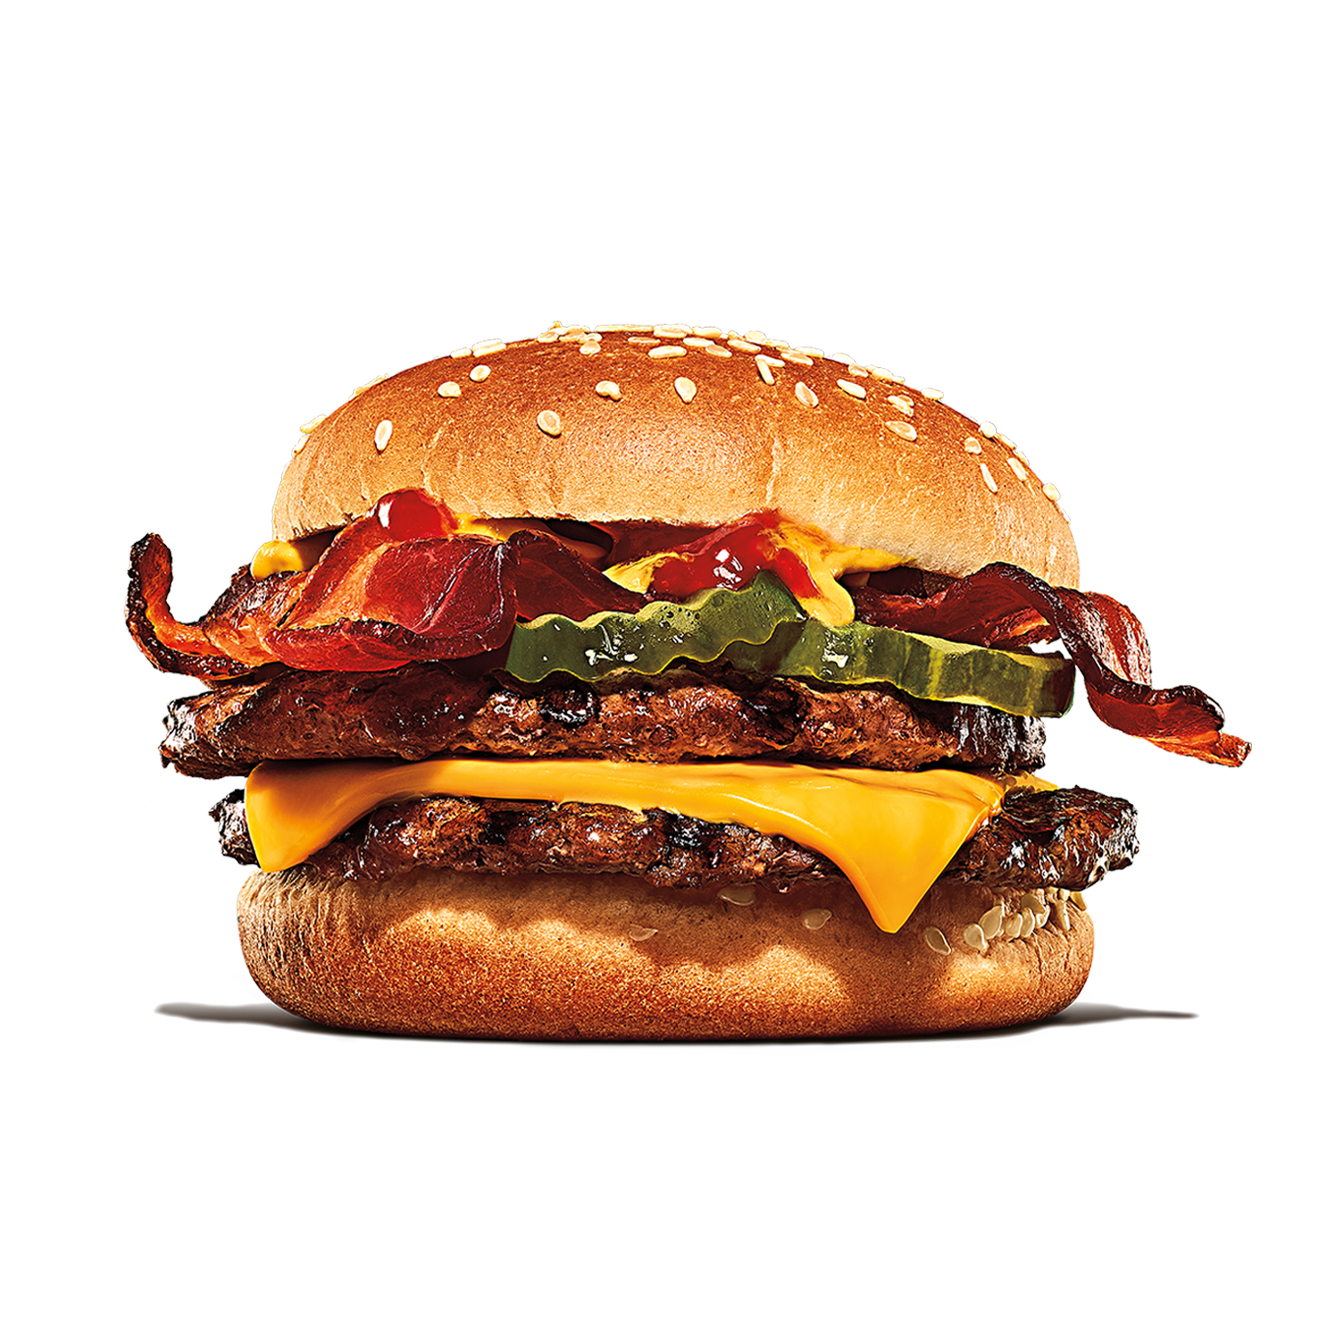 Burger King Ocala (352)690-2074